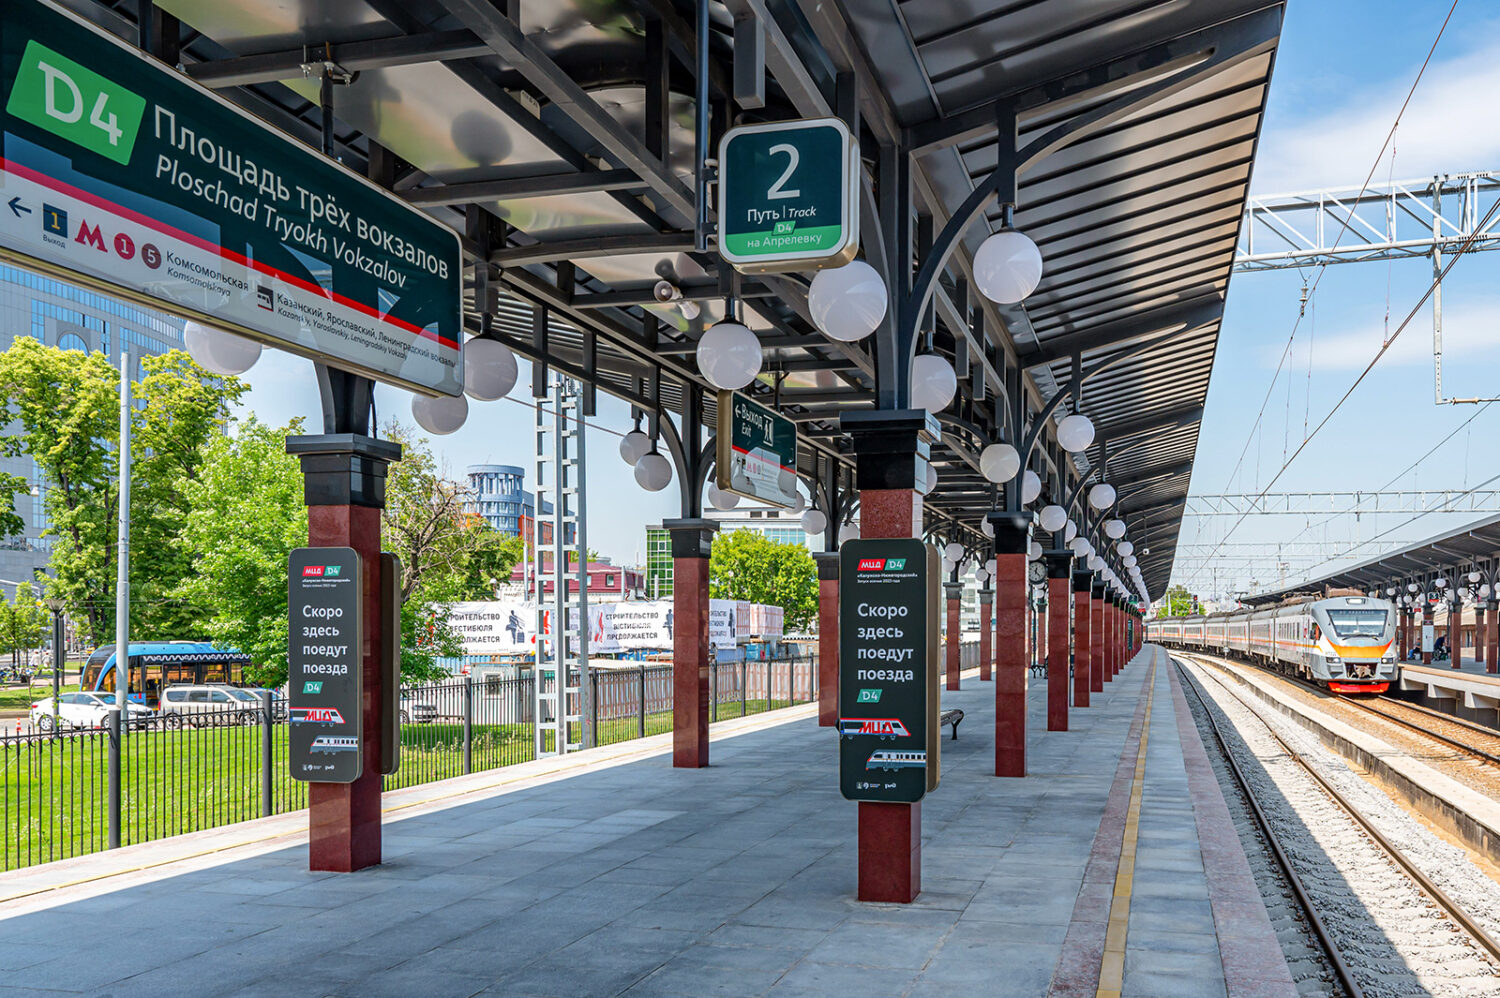 Станция "Площадь трех вокзалов" полностью открылась после реконструкции